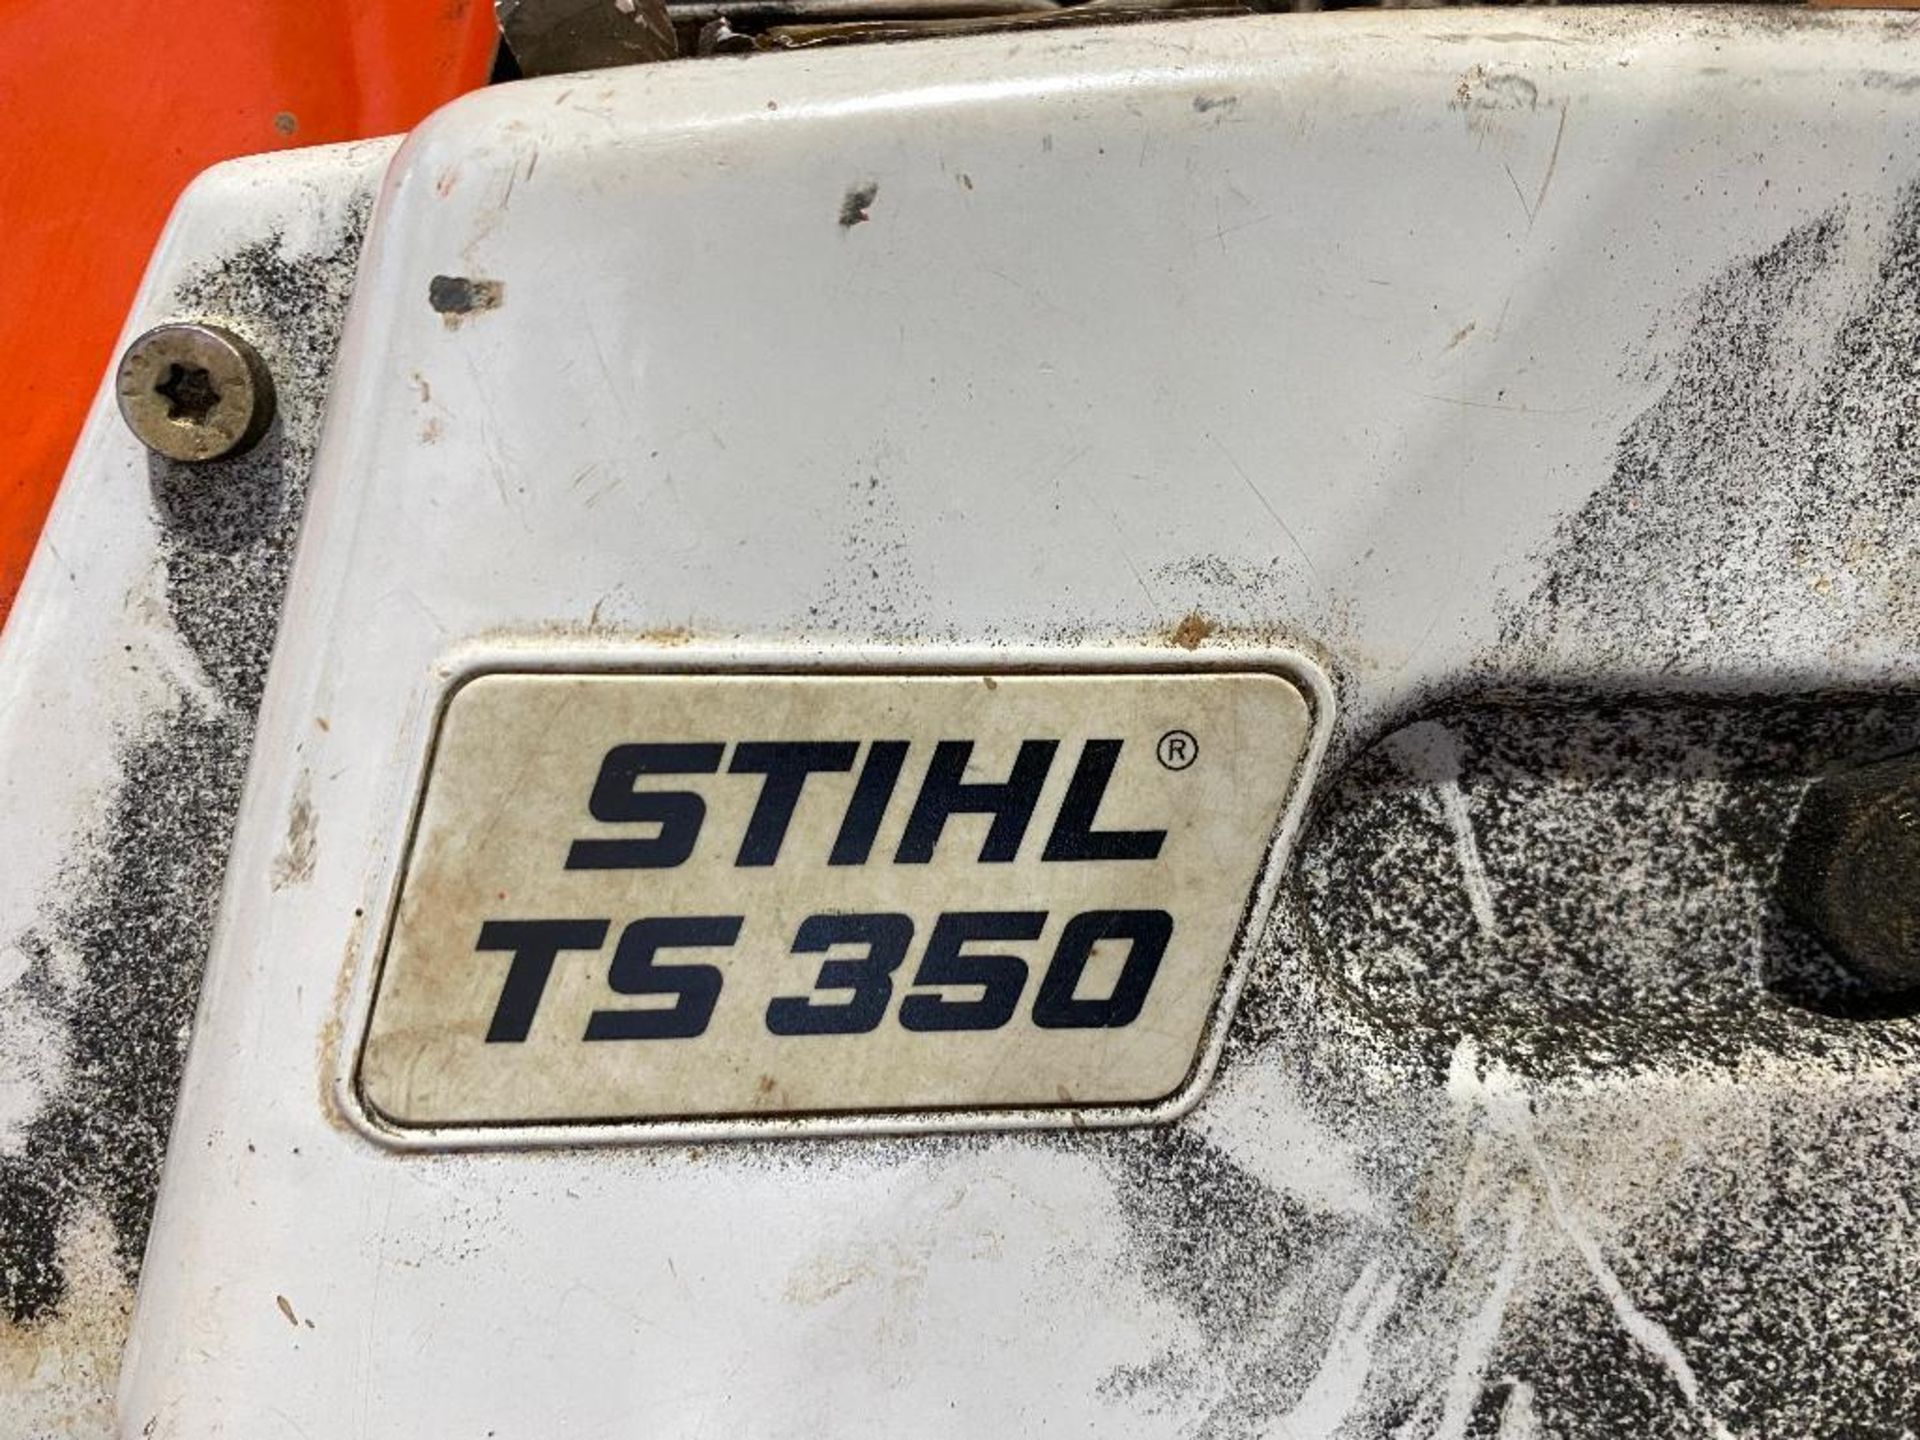 Stihl TS 350 Gas Cut Off Saw - Image 4 of 6